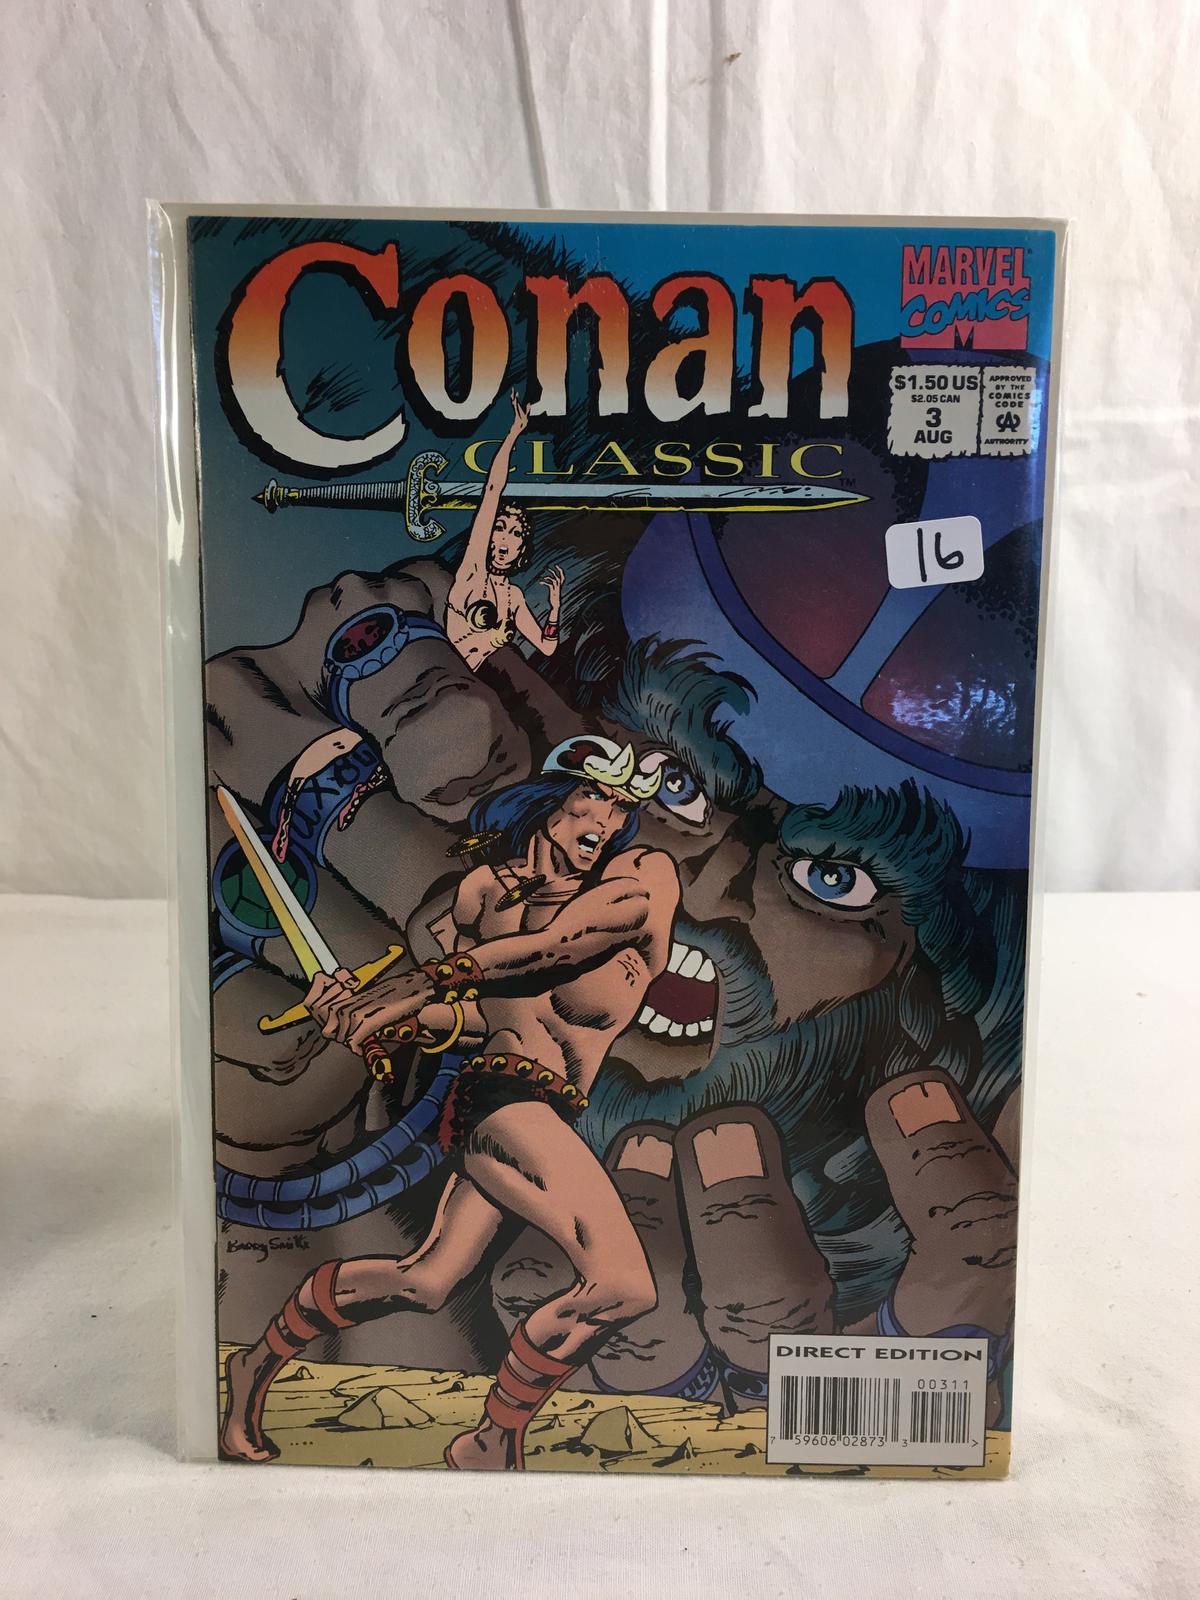 Collector Marevl Comics Conan Classic Comic Book No.3